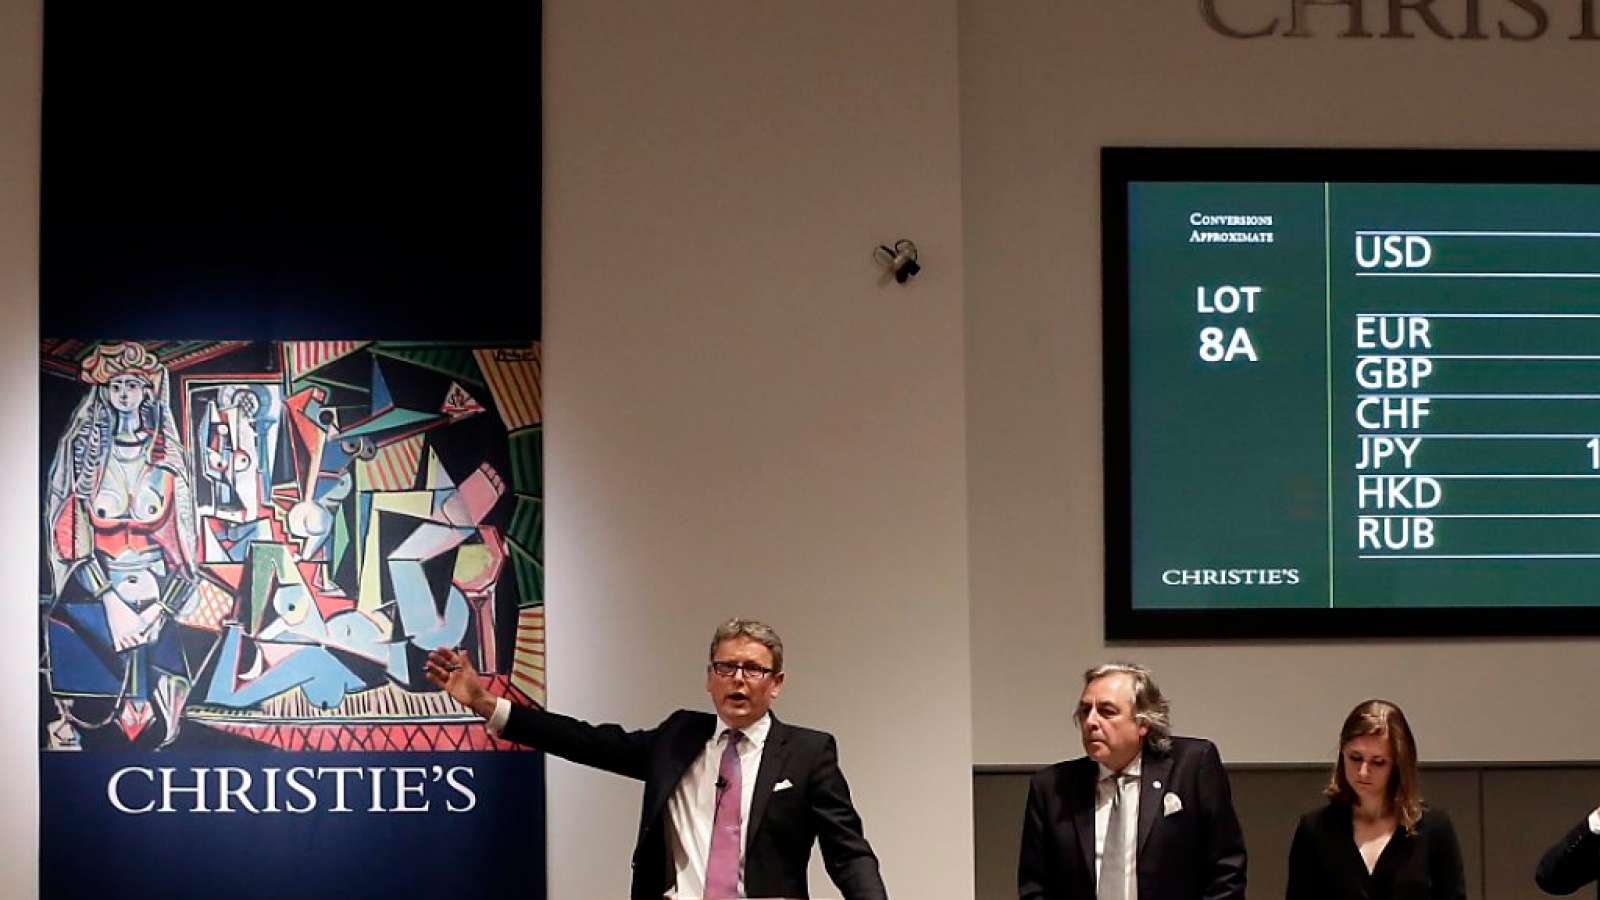 Bei dem Auktionshaus Christie's wurde ein Picasso für 45 Millionen Dollar versteigert. (Archivbild von früherer Picasso-Auktion)